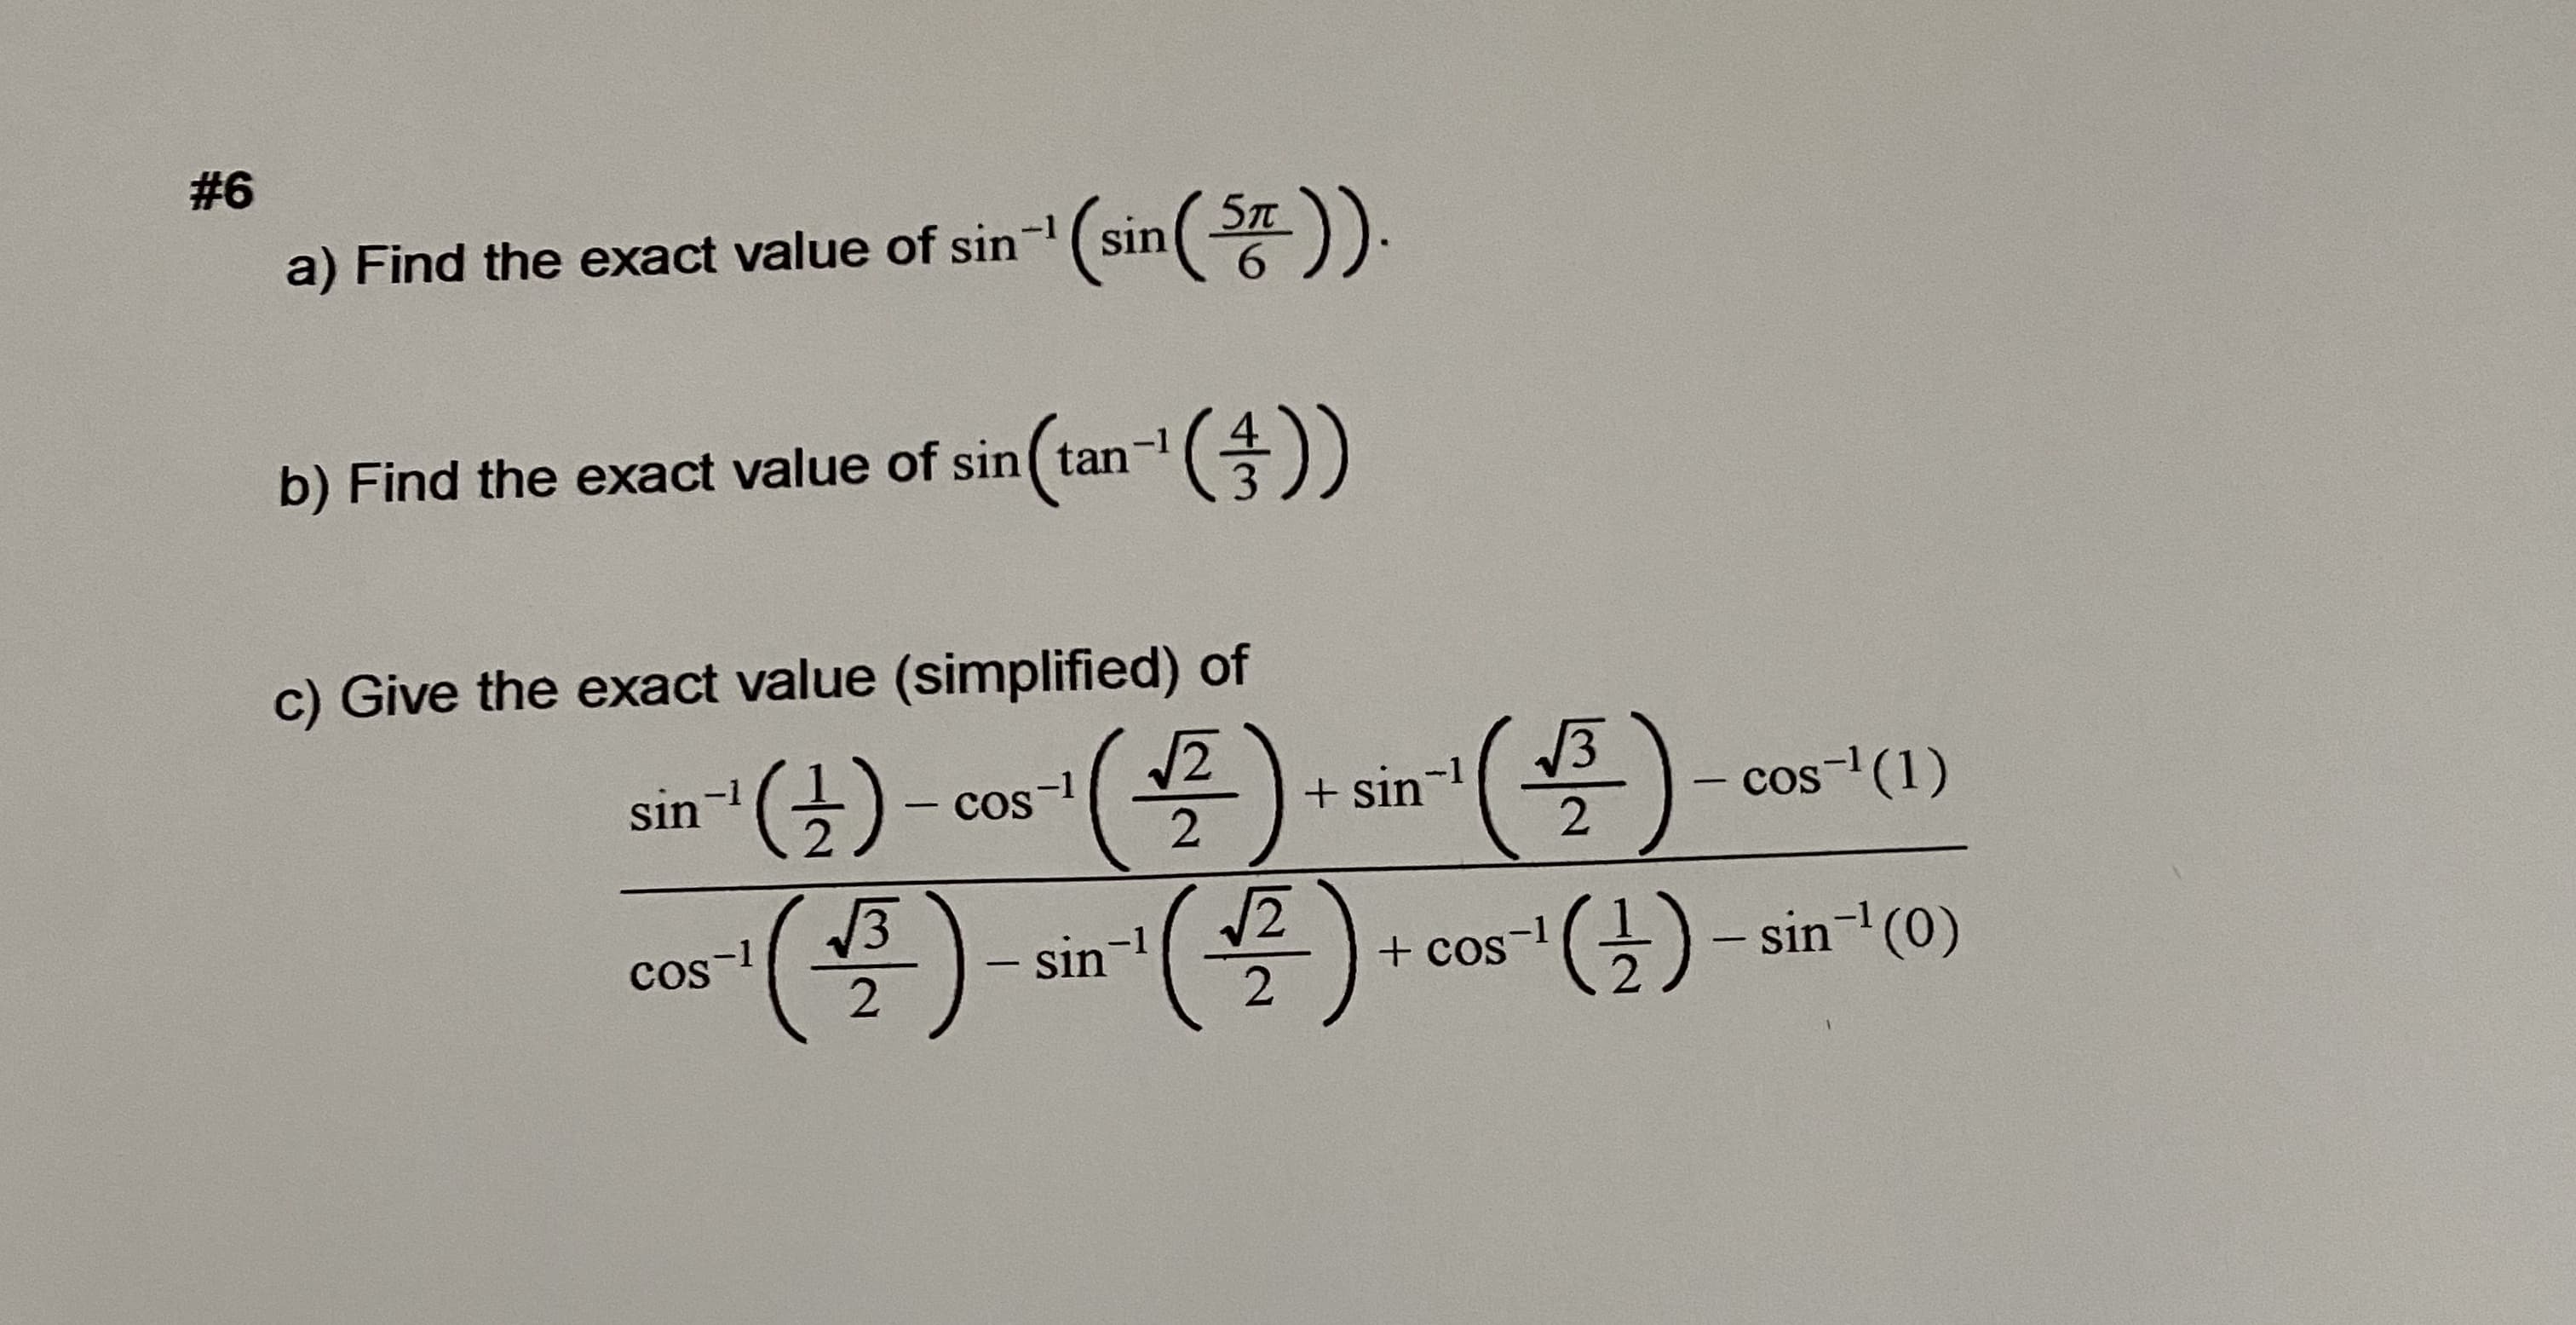 #6
a) Find the exact value of sin-(sin( )).
6.
(an- (총))
b) Find the exact value of sin ( tan
3.
c) Give the exact value (simplified) of
)
13
(골)- cos-1(목
sin
+ sin-1
cos- (1)
CoS
COS
cos-1
sin-1
(금)-sin-l(0)
-1
2.
+ cos
|
